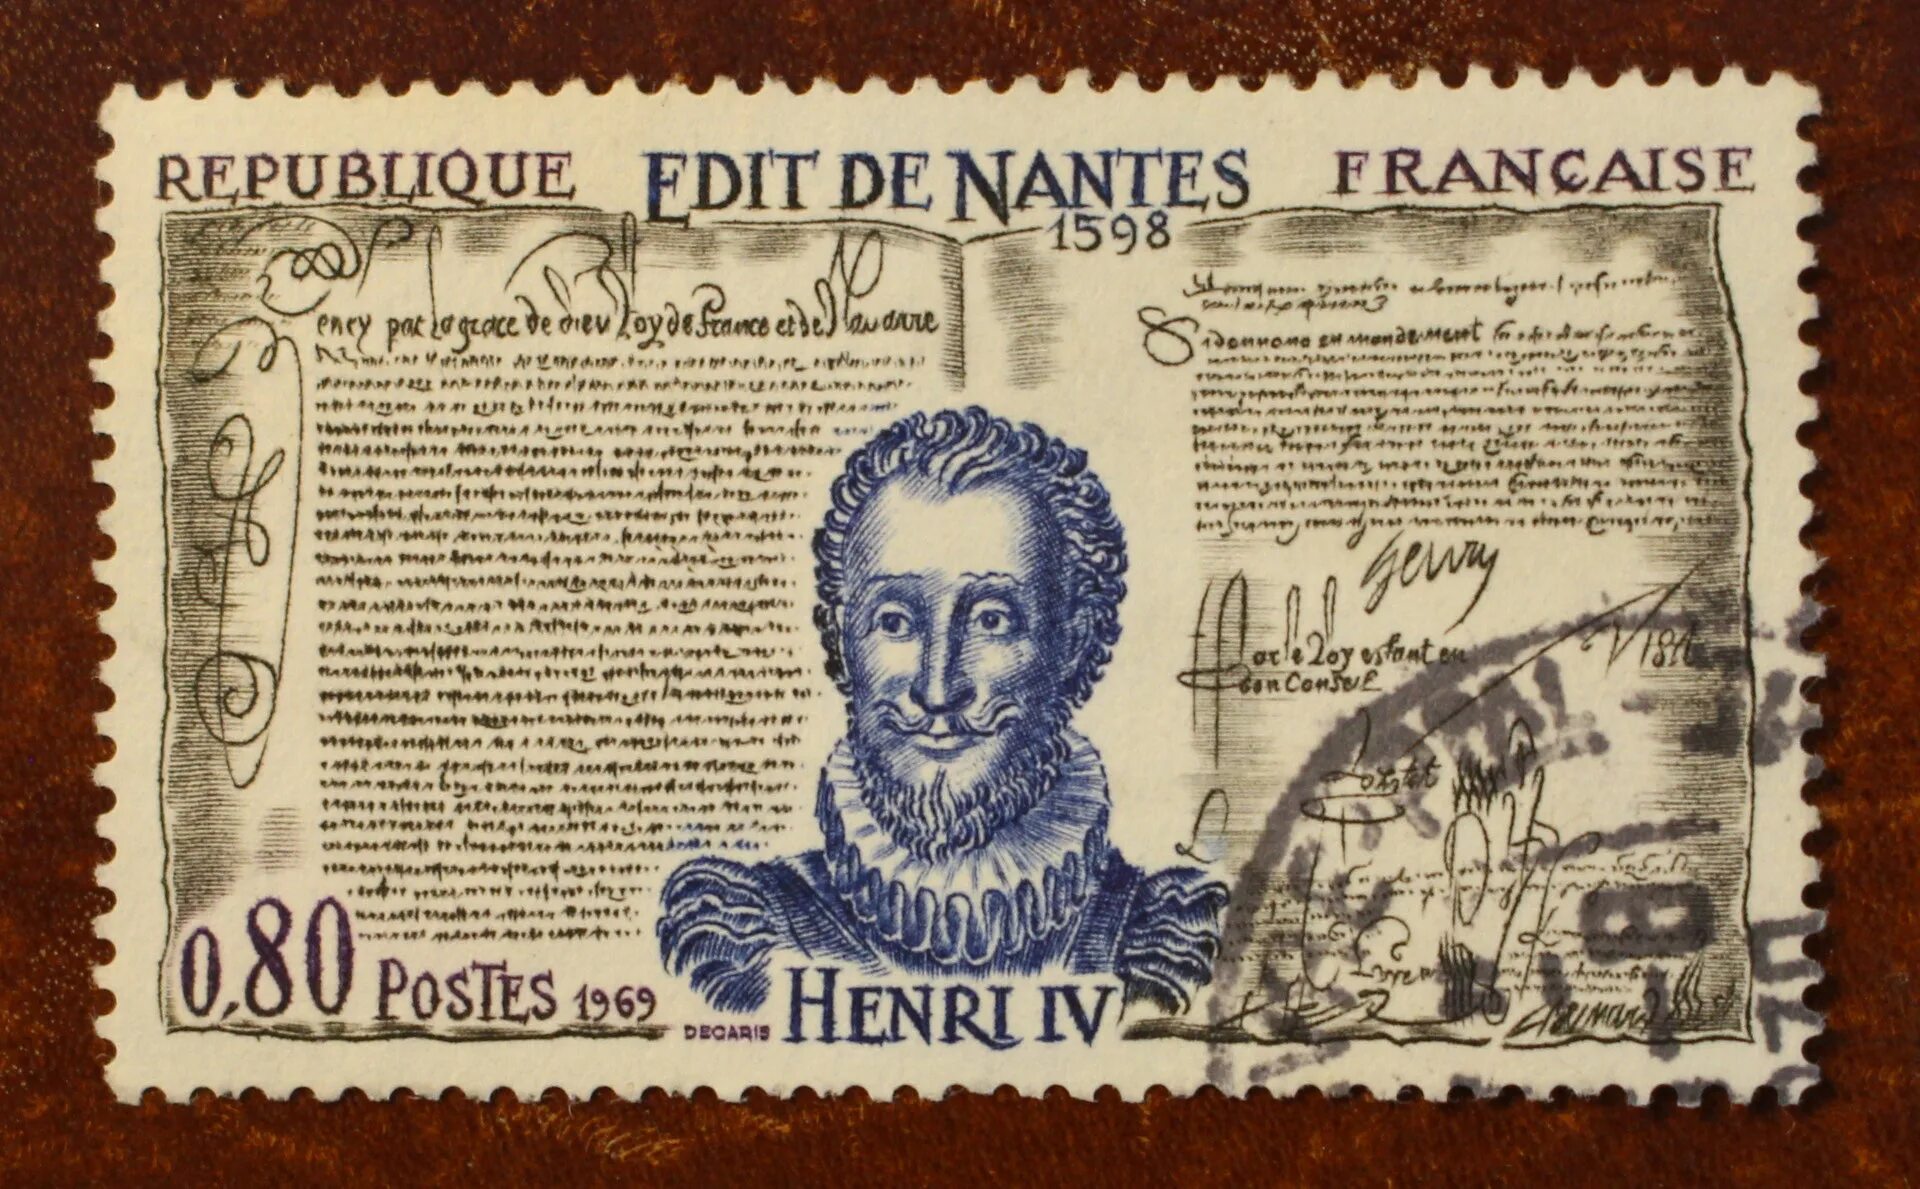 Нантский эдикт генриха во франции. Нантский эдикт 1598. Нантский эдикт Генриха IV во Франции (1598г.). Нантский эдикт Генриха IV во Франции кратко.